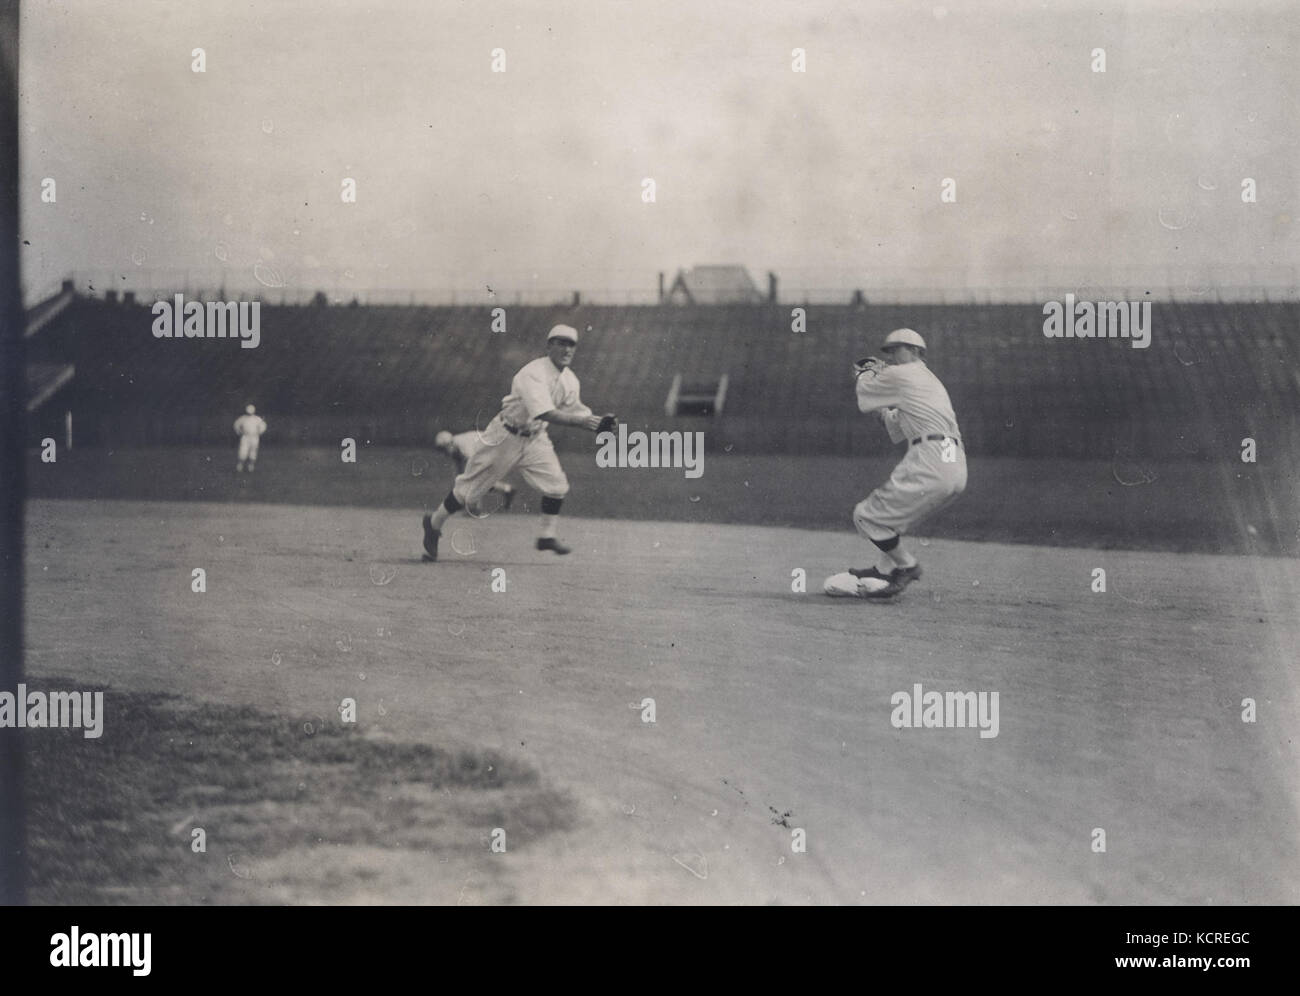 Kardinäle infielders Arnold Hauser (shortstop) und Miller Huggins (zweite Base) im Spiel an die zweite Basis Stockfoto